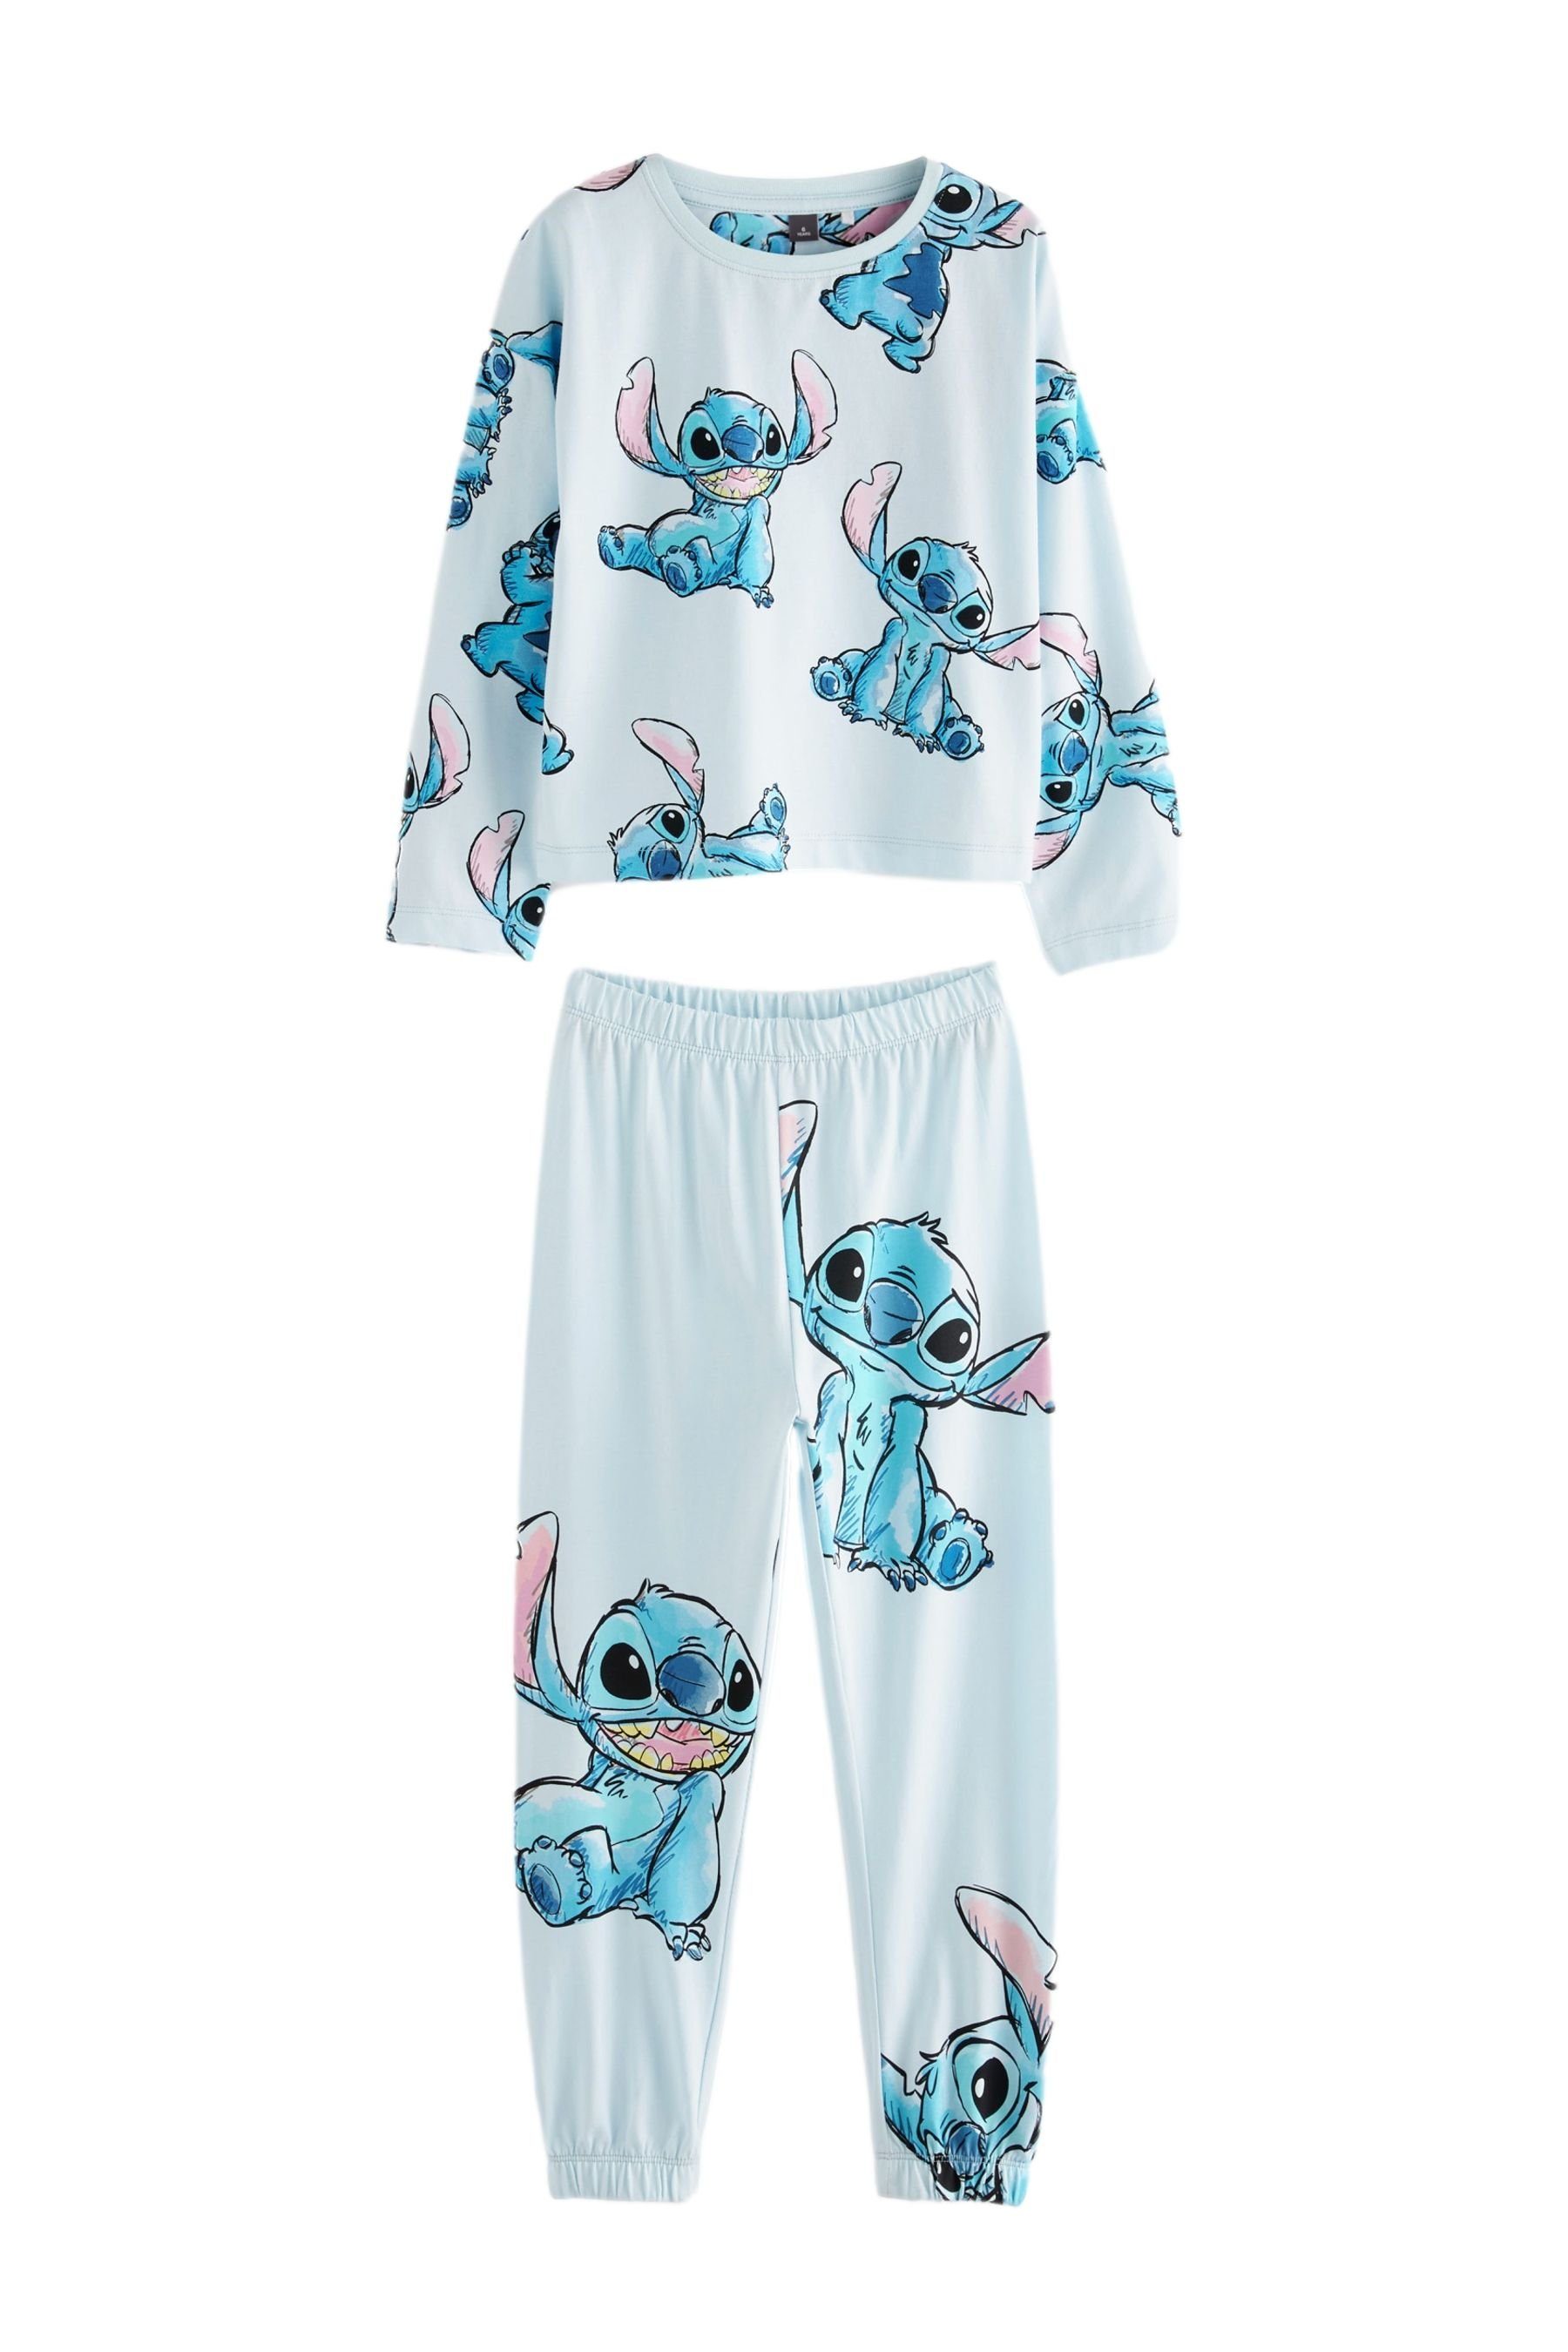 Next Pyjama Lizenzierter Schlafanzug Disney Stitch (2 tlg) | Pyjamas